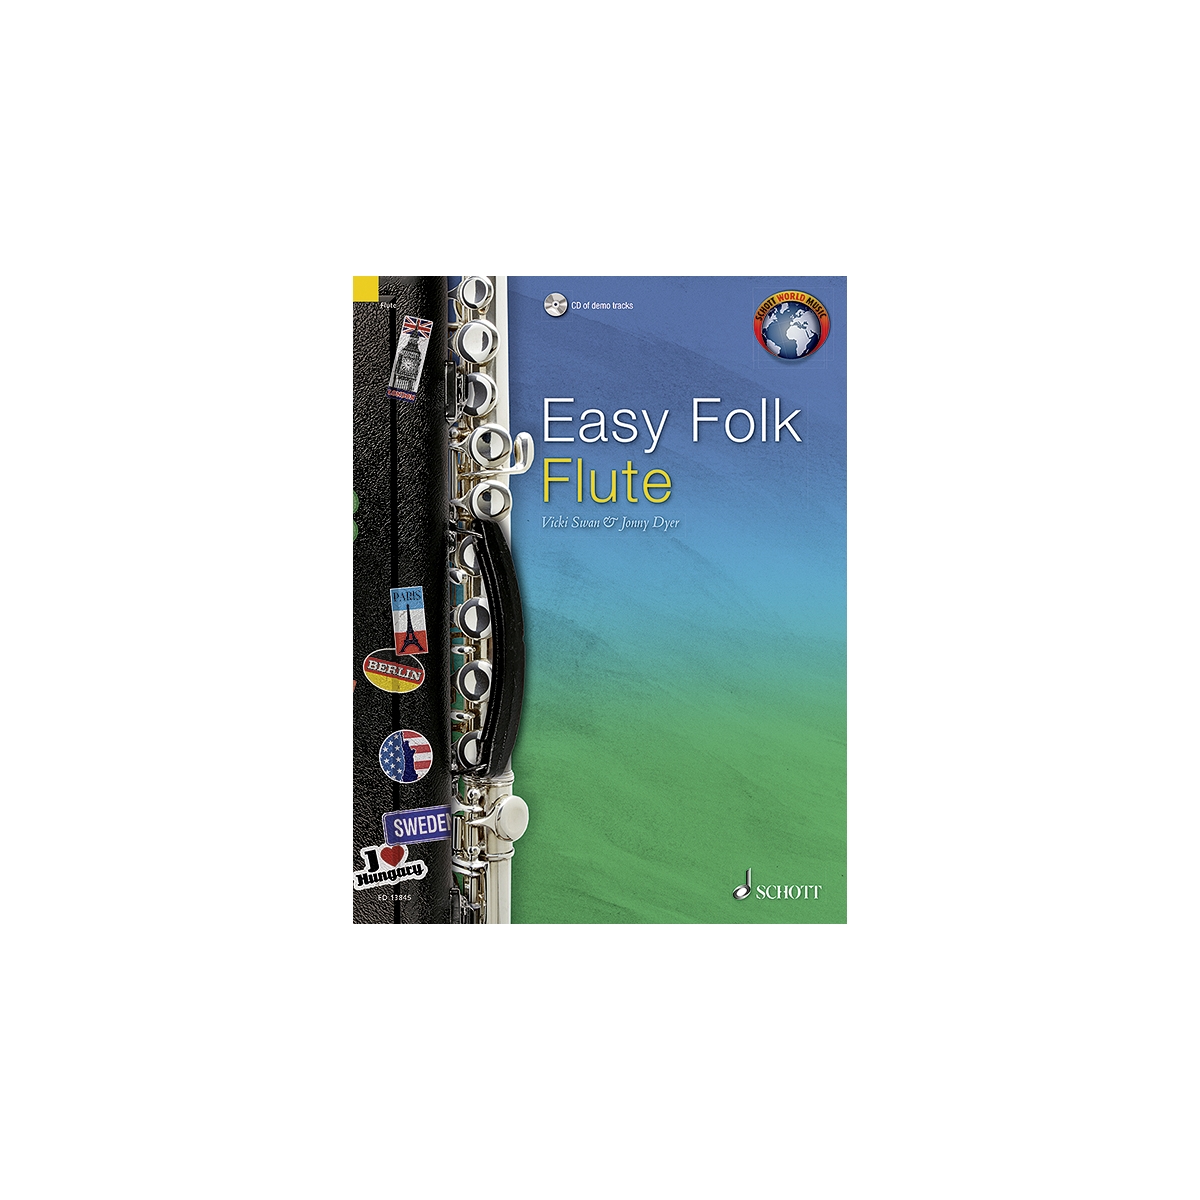 Easy Folk - Flute